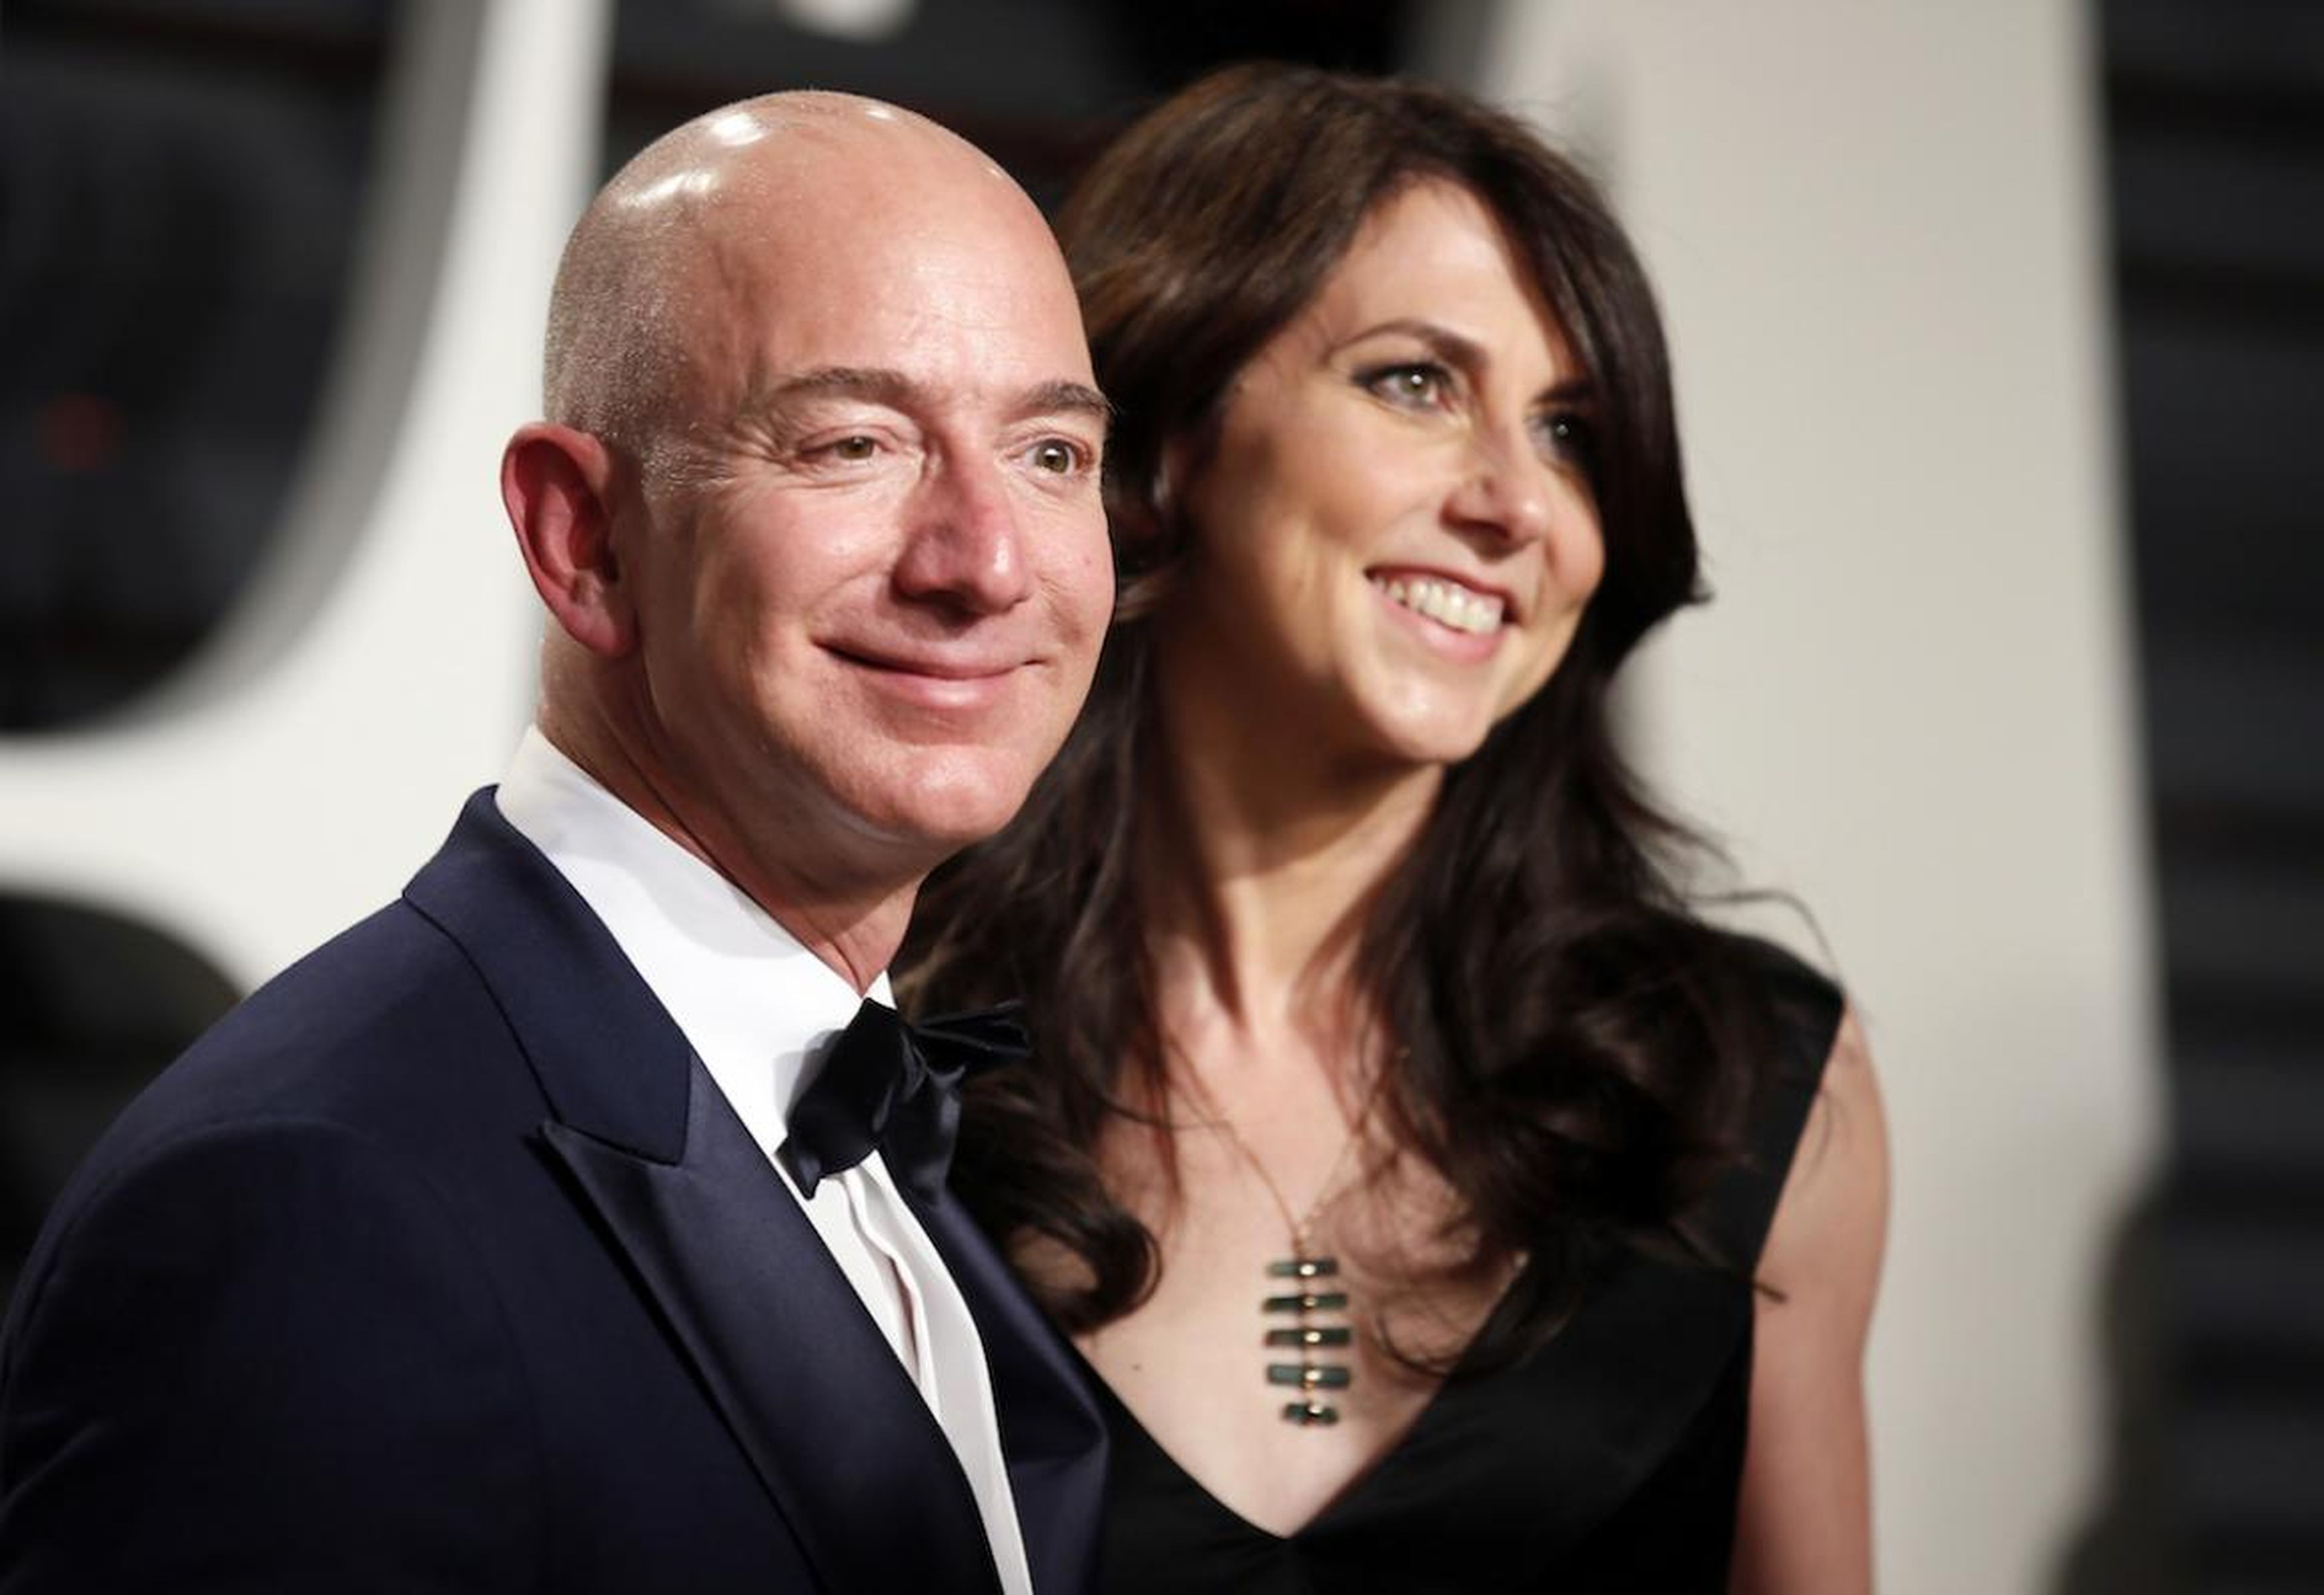 Jeff y MacKenzie Bezos se están divorciando después de 25 años de matrimonio. ¿Existiría Amazon si nunca hubieran estado casados? Probablemente no.